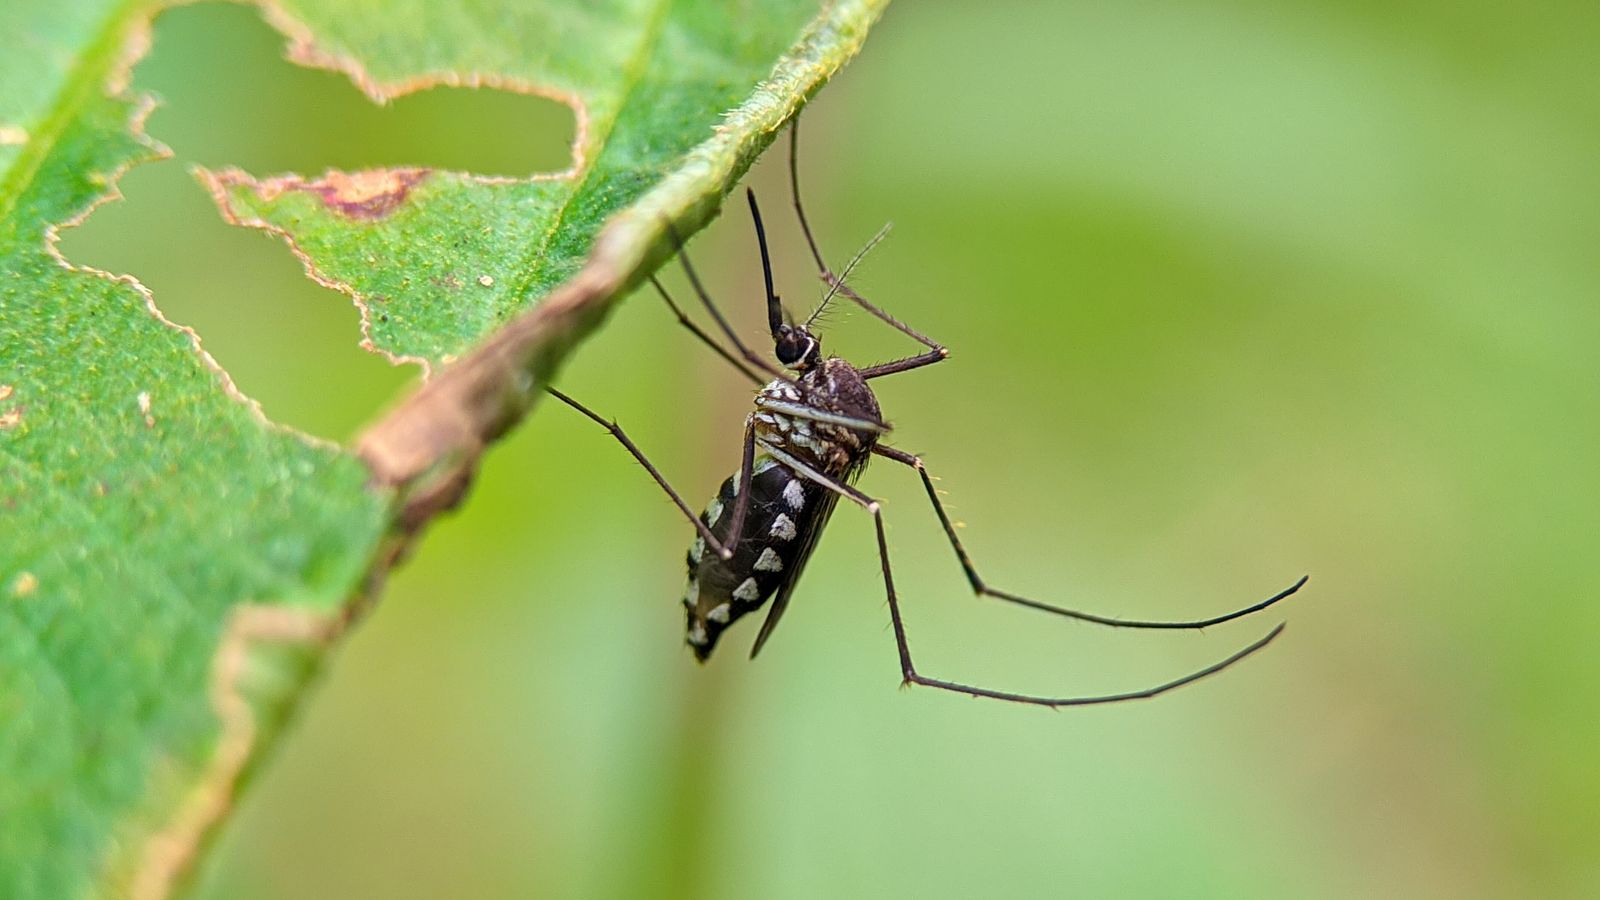 Changement climatique : des étés plus longs et plus chauds pourraient augmenter le risque que les moustiques soient porteurs de « maladies mortelles » au Royaume-Uni, selon les experts |  Actualités scientifiques et technologiques